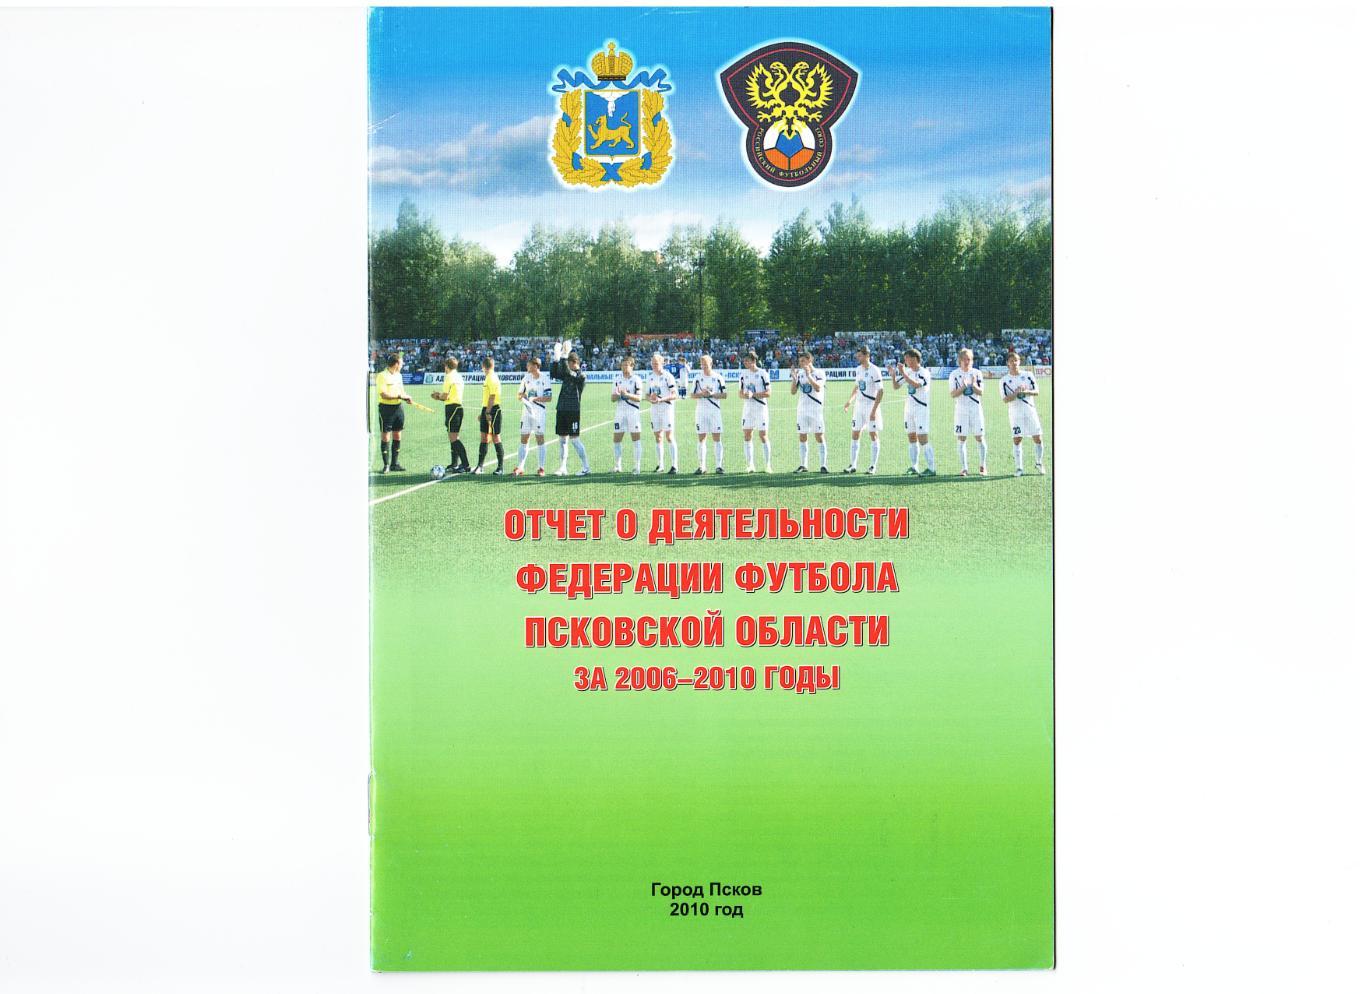 «Отчет о деятельности федерации футбола Псковской области за 2006-2010 годы».